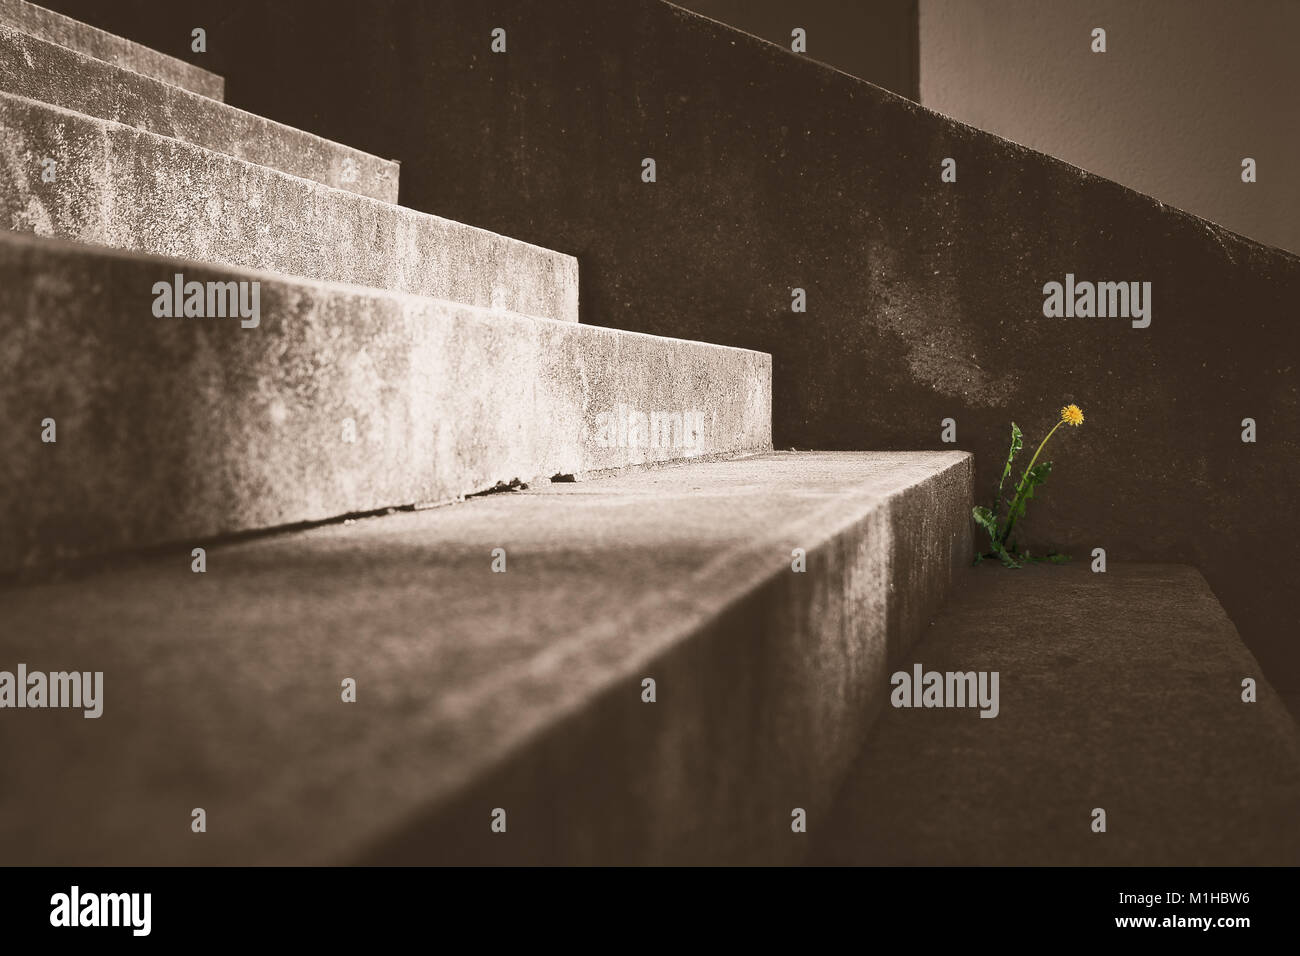 L'image artificielle d'un pissenlit solitaire sur l'escalier en béton. La fleur est isolé dans l'image. Banque D'Images